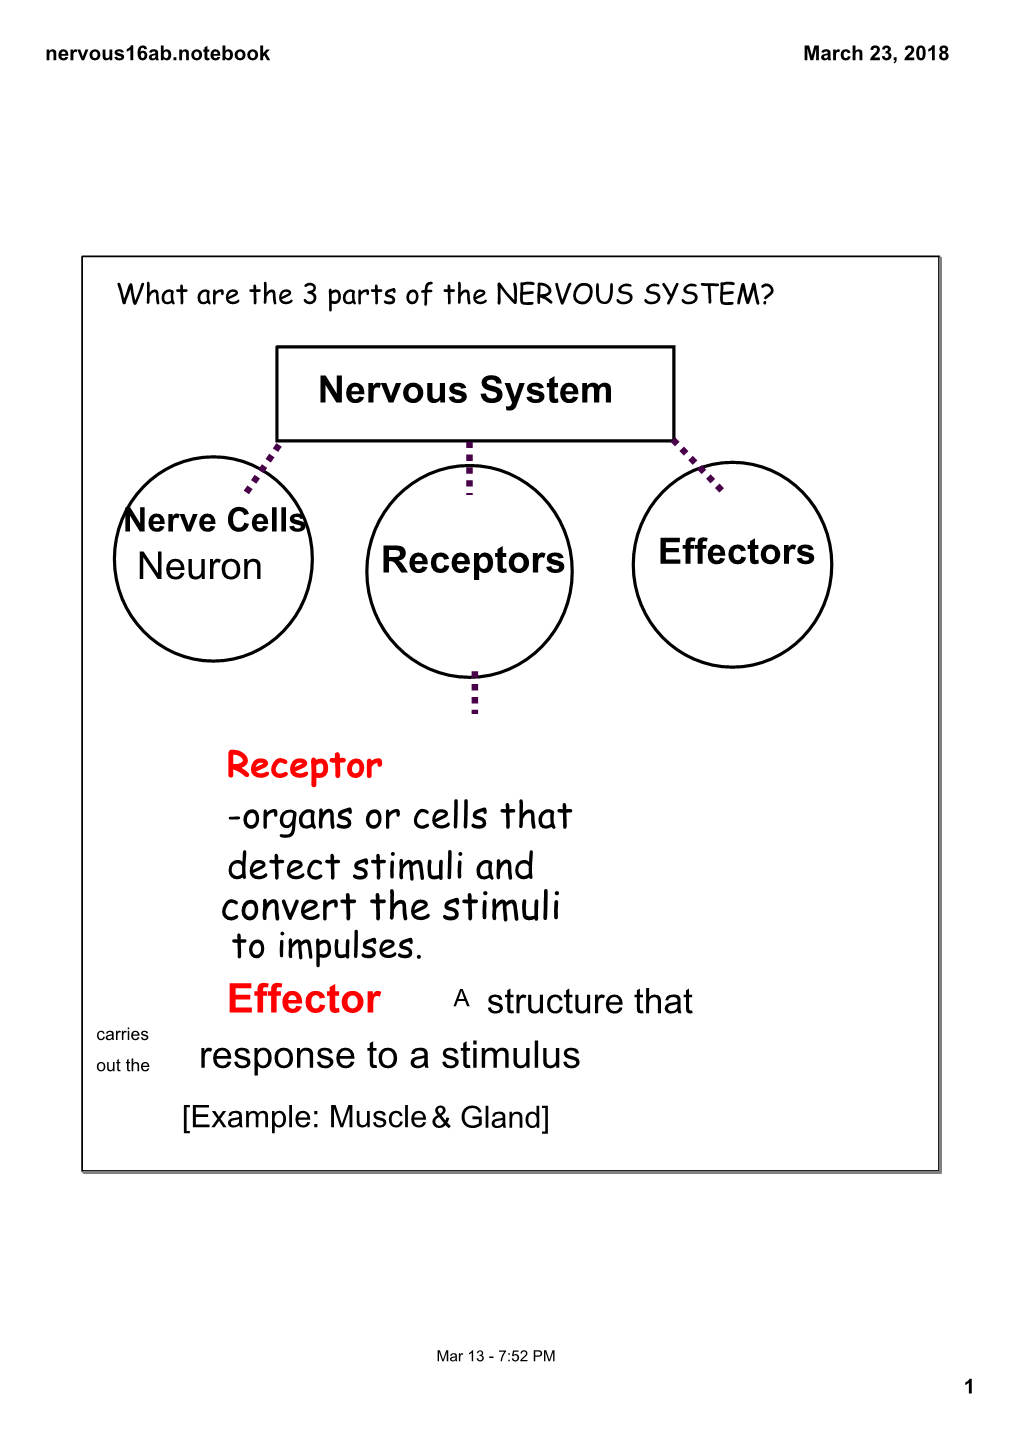 Nervous System?